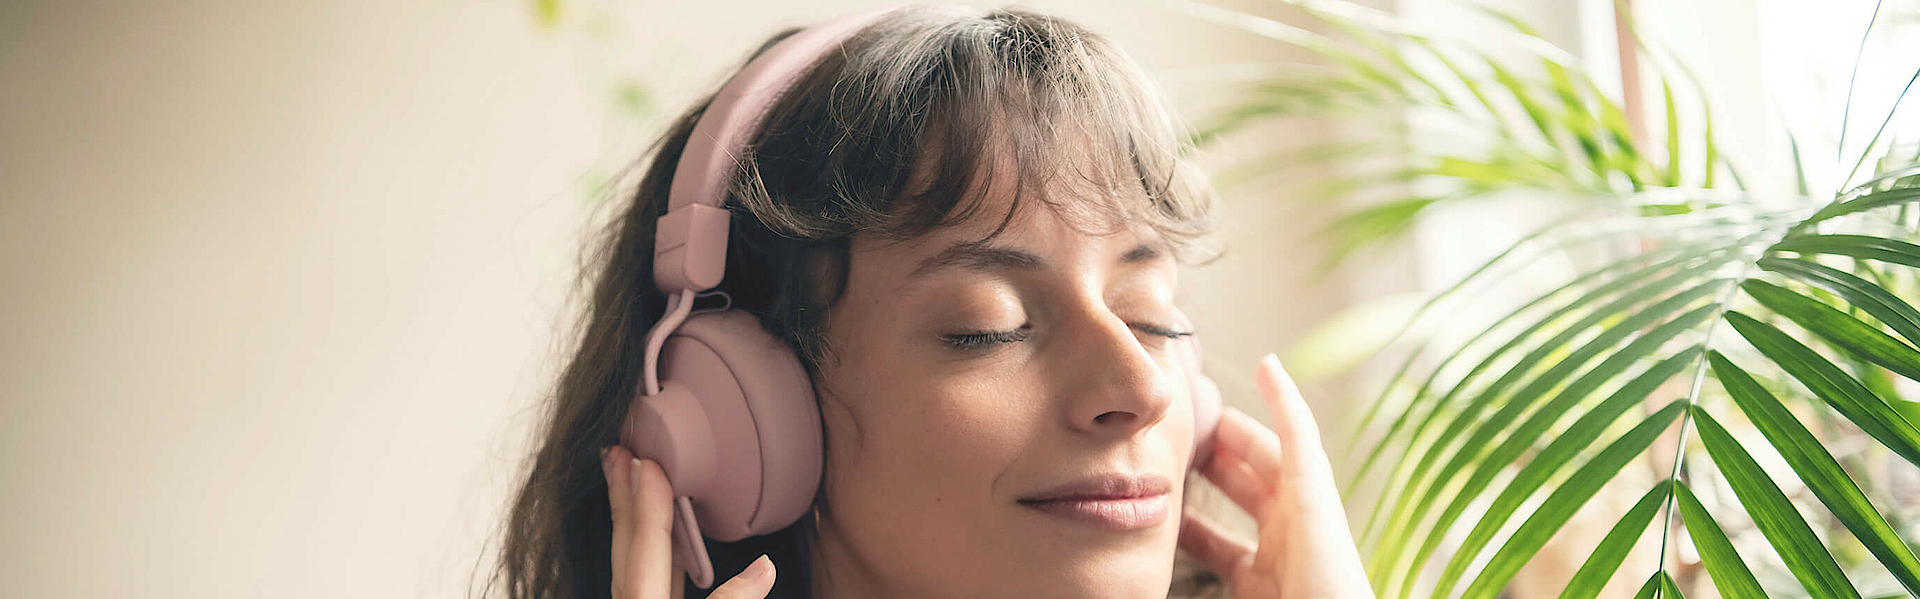 Frau hört über Kopfhörer Musik, sie hat die Augen geschlossen und ist entspannt.